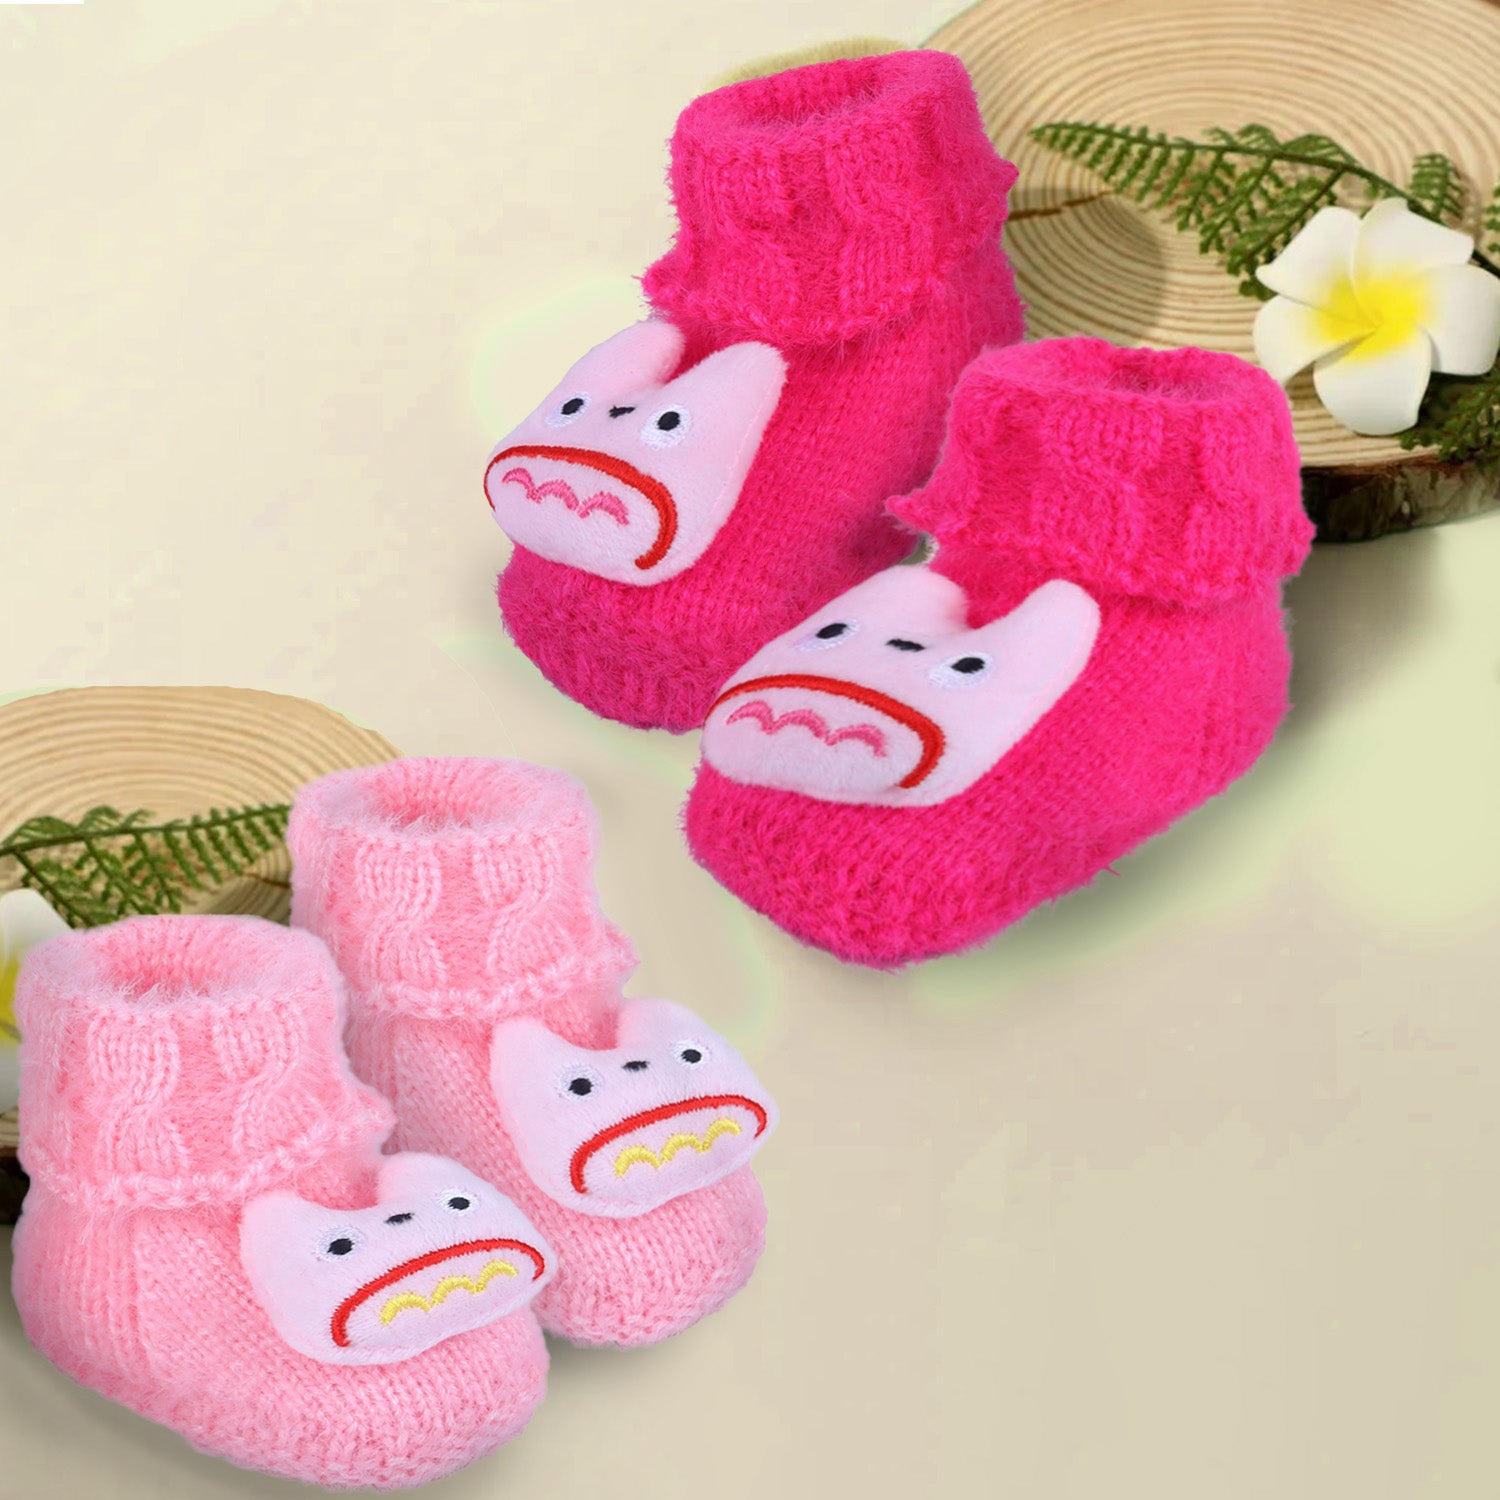 Baby Moo Cartoon Crochet Woollen 3D Socks Booties - Magenta - Baby Moo